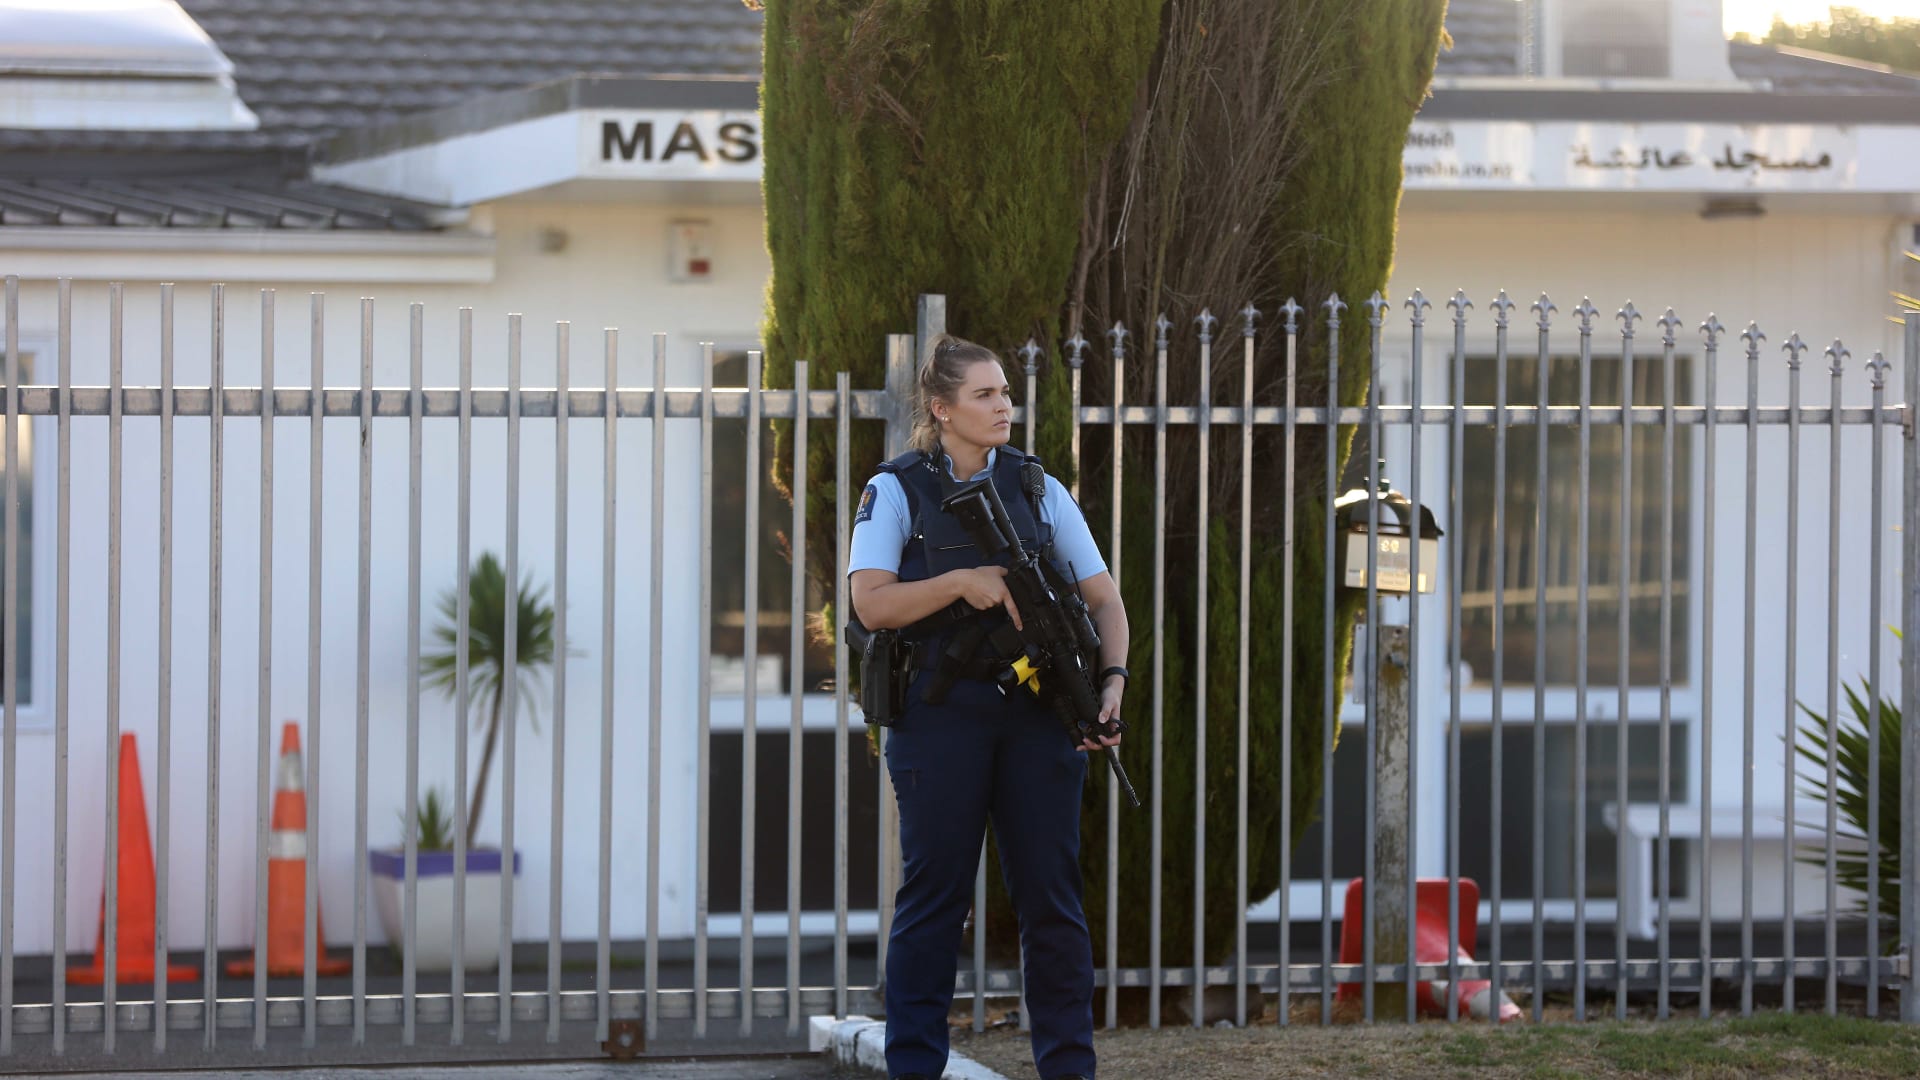 المشاهد الأولى بعد حادثة إطلاق النار في مسجدين بنيوزلندا